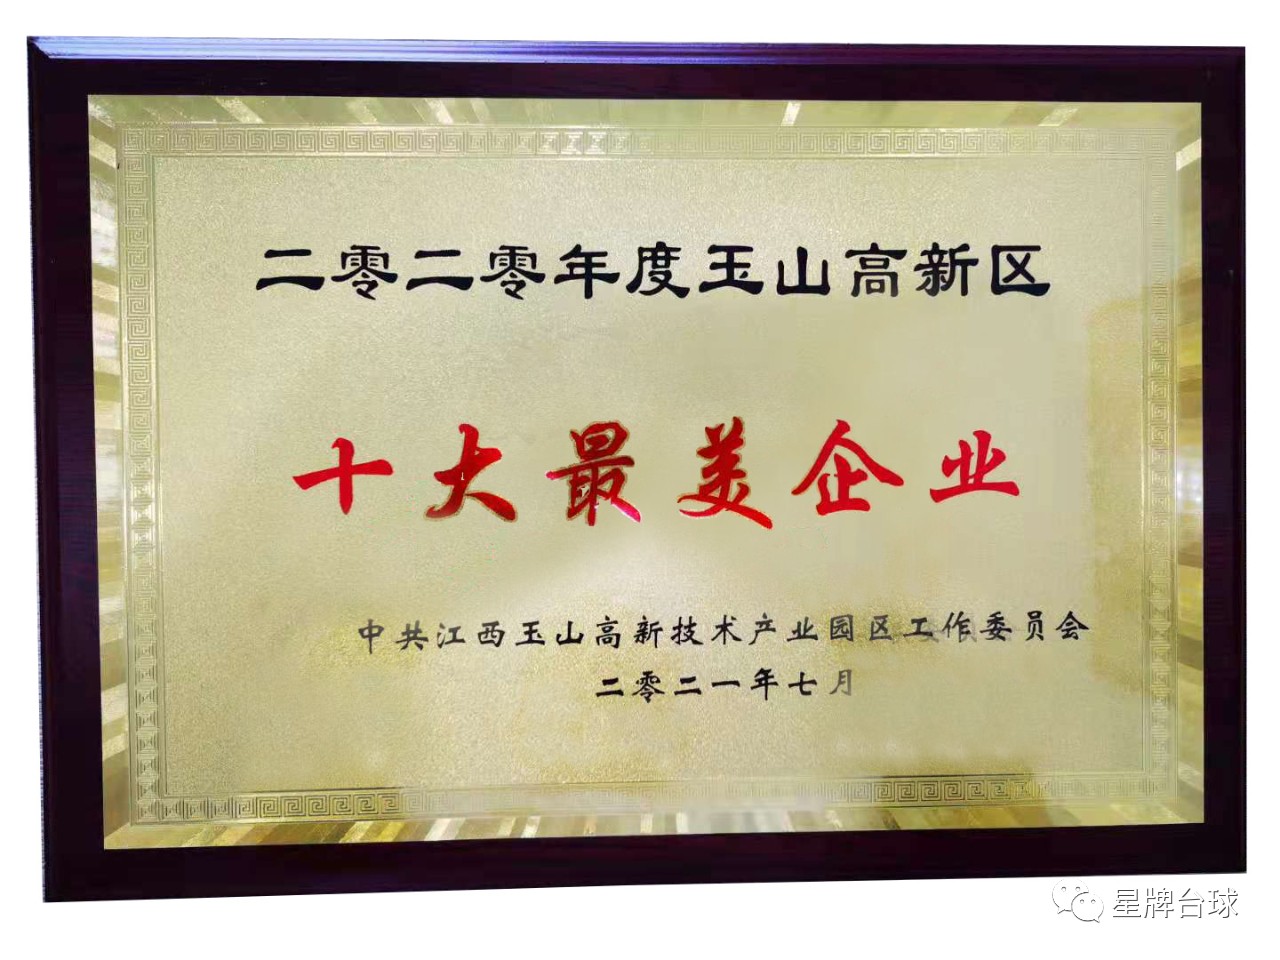 玉山县高新区举行庆祝中国共产党成立100周年表彰大会 星牌获两项殊荣